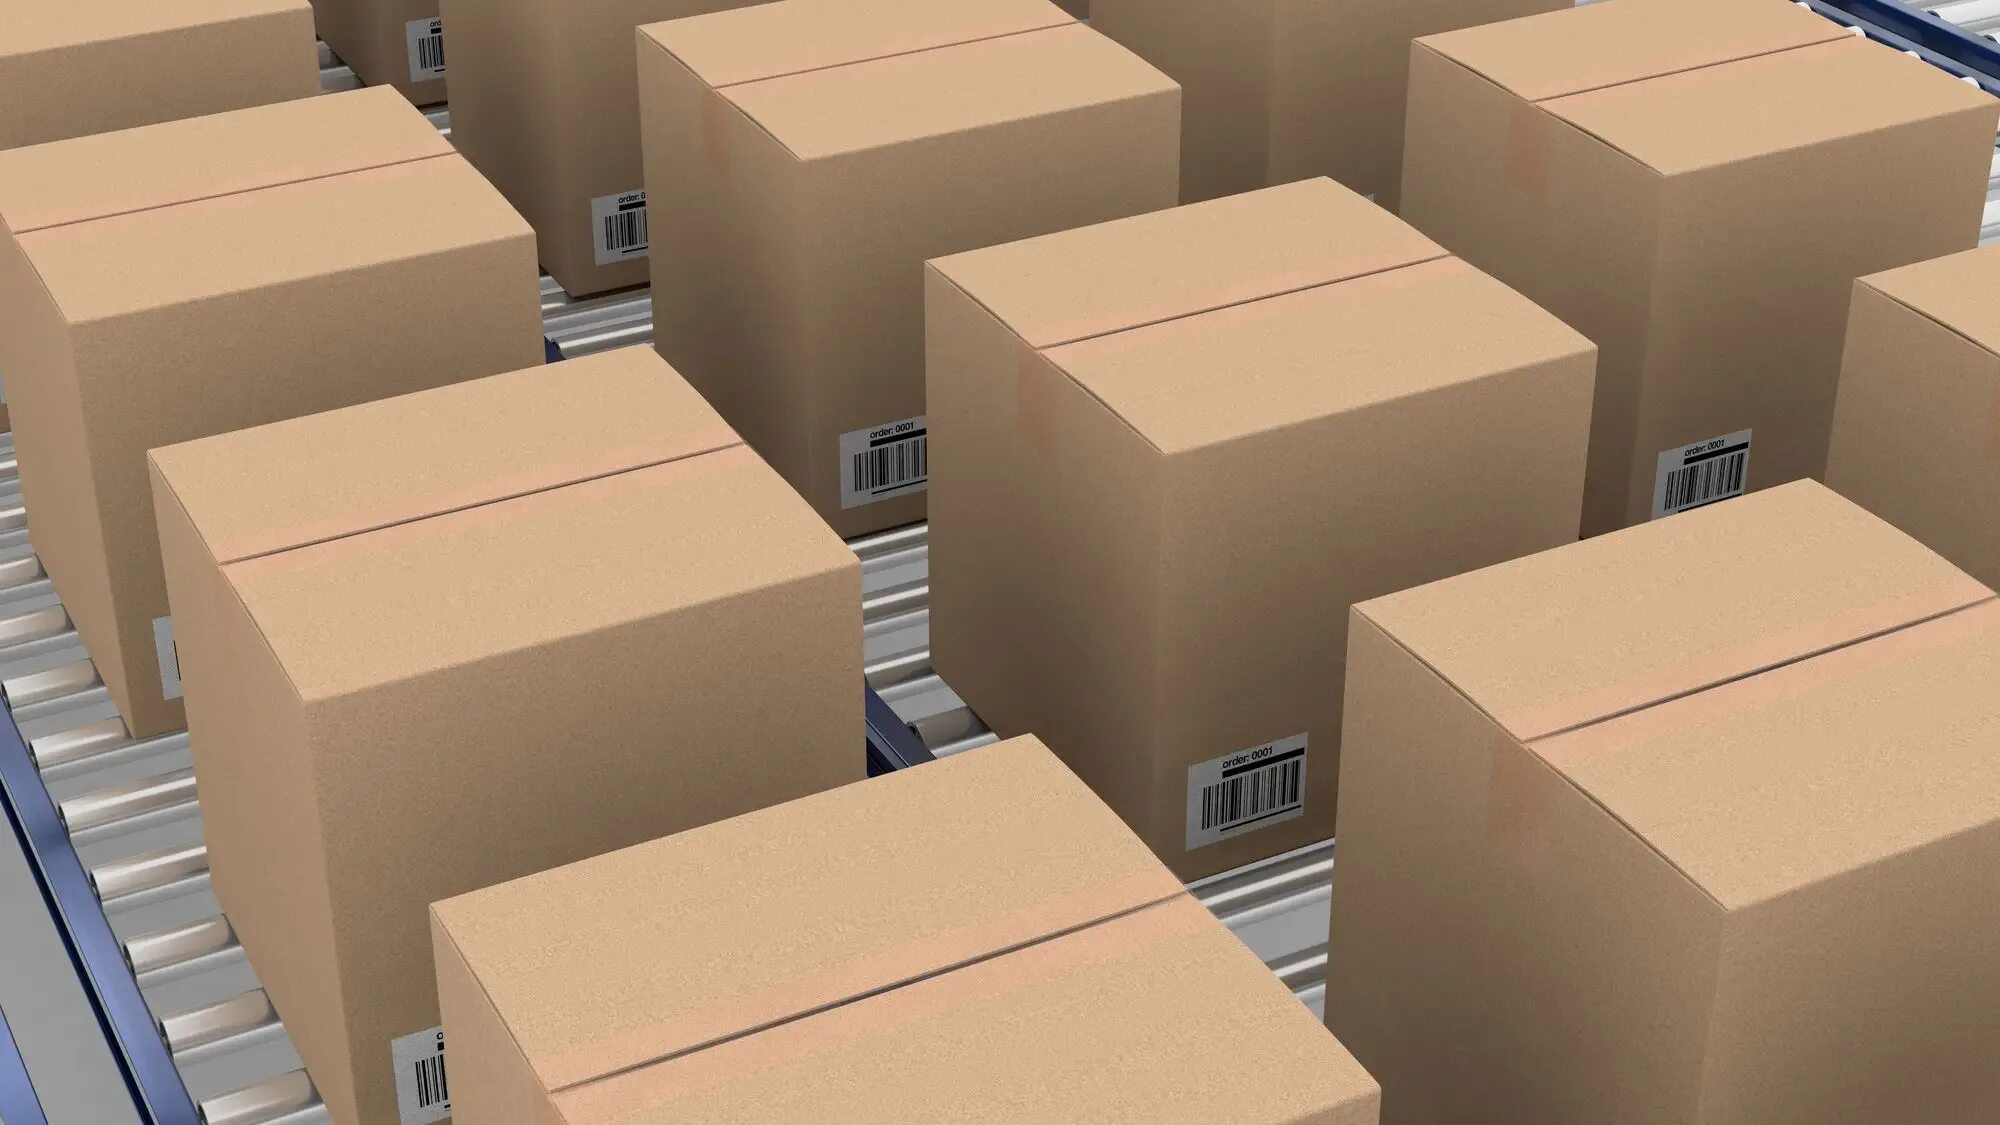 Package is transit. Упаковка на складе. Упаковка логистика. Упаковка на экспорт. Упаковка для маркетплейсов.